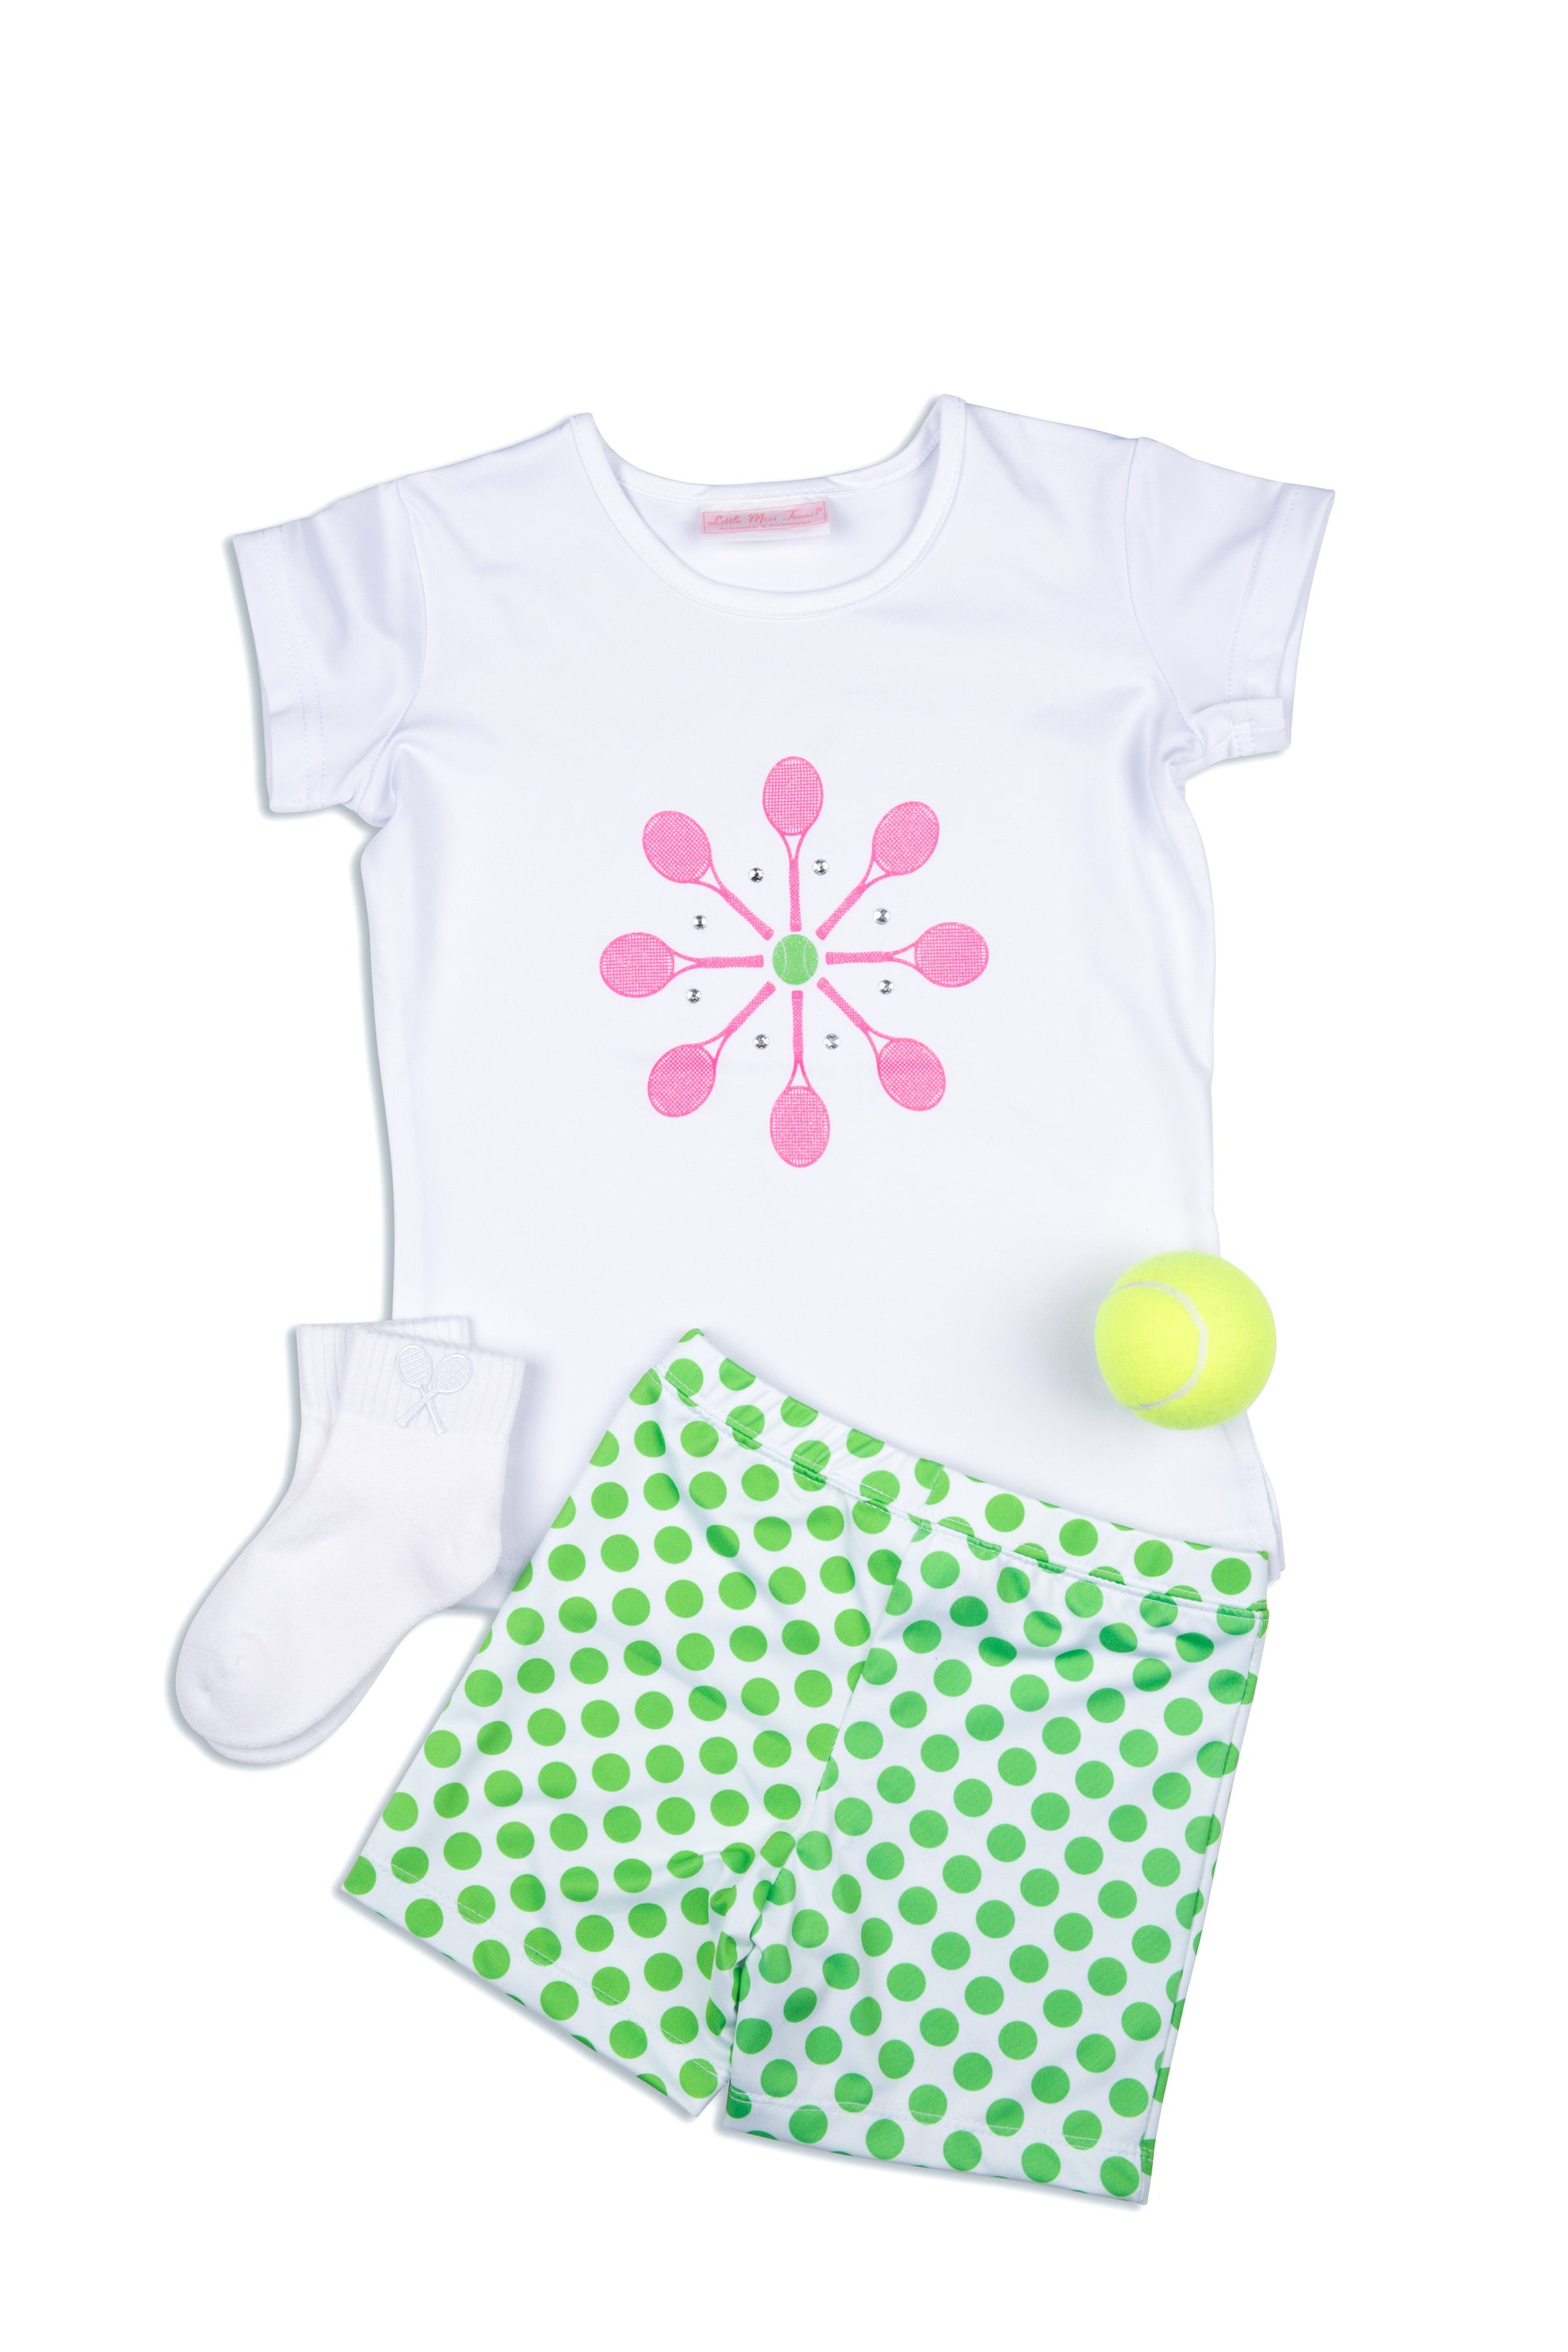 Meadow Lane Shorts - Little Miss Tennis